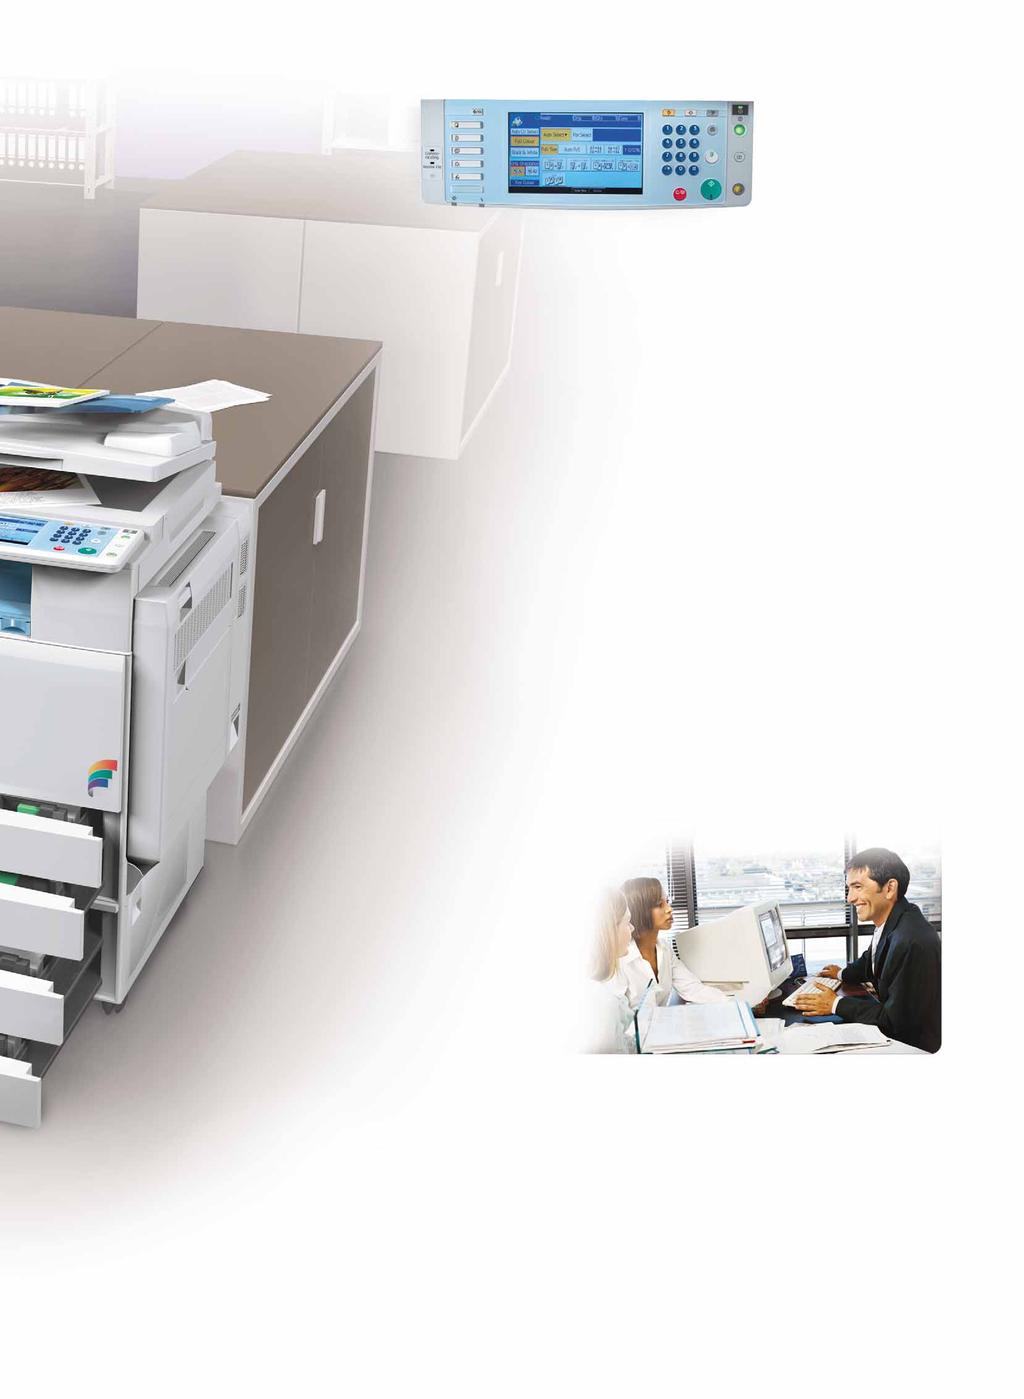 Gestione ottimale dei documenti Per ottimizzare la gestione dei documenti, stampe, fax, copie e scansioni possono essere salvati.